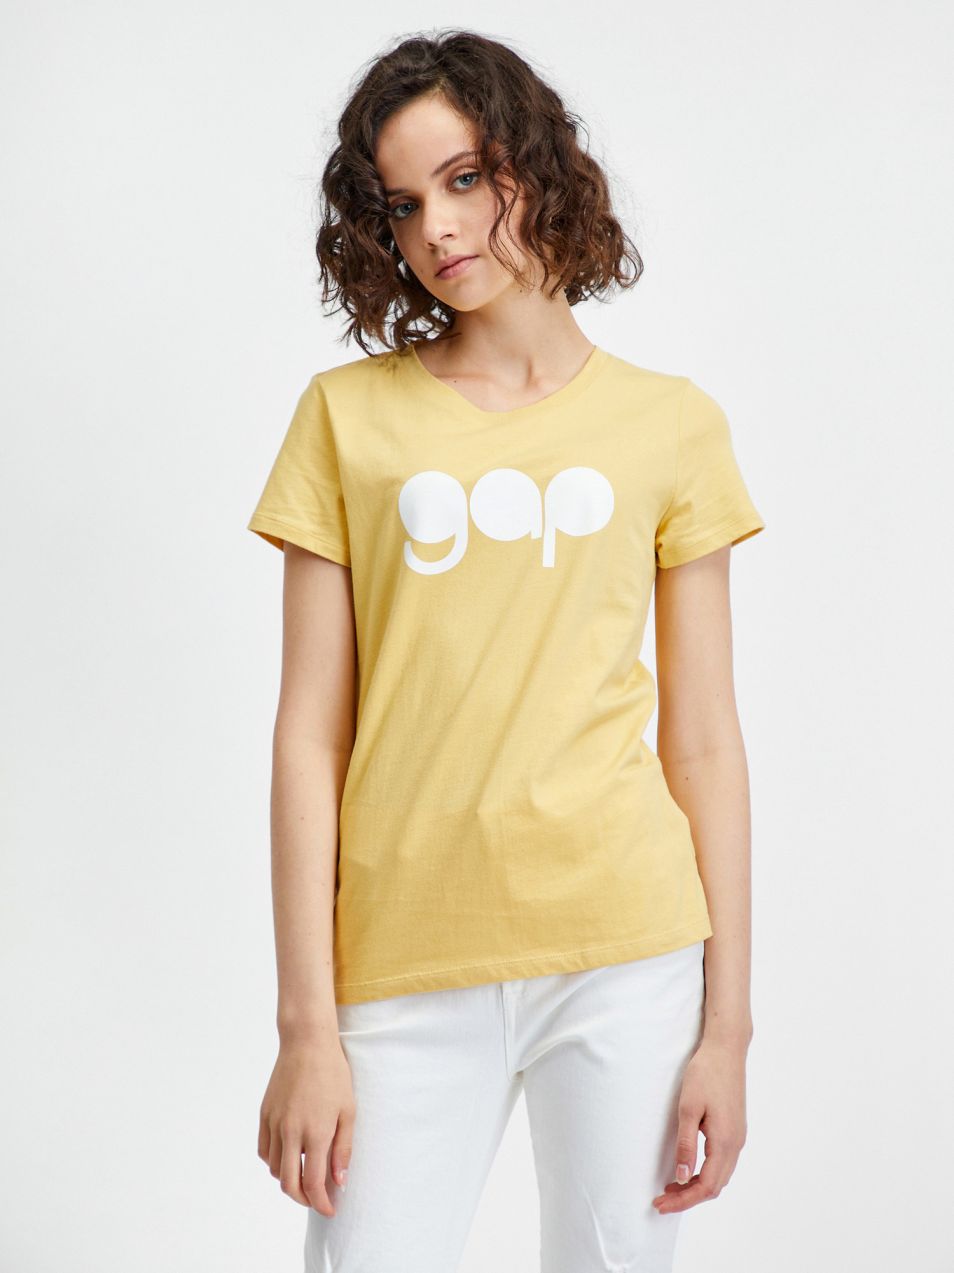 Žlté dámske tričko s retro logom GAP